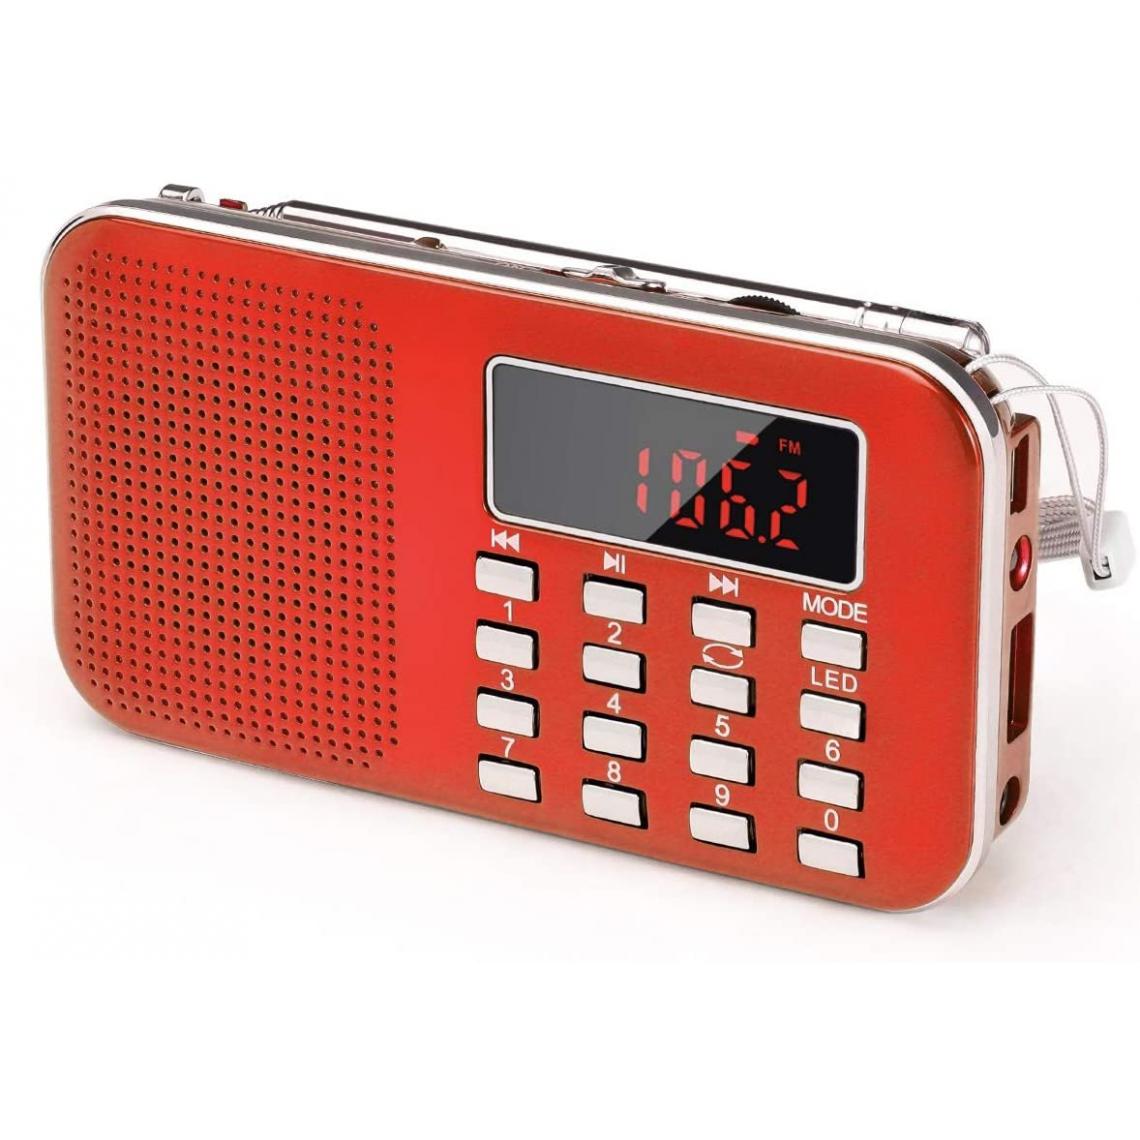 Prunus - radio portable AM / FM / SD / AUX / USB avec batterie rechargeable de 1200 mAh rouge gris - Radio